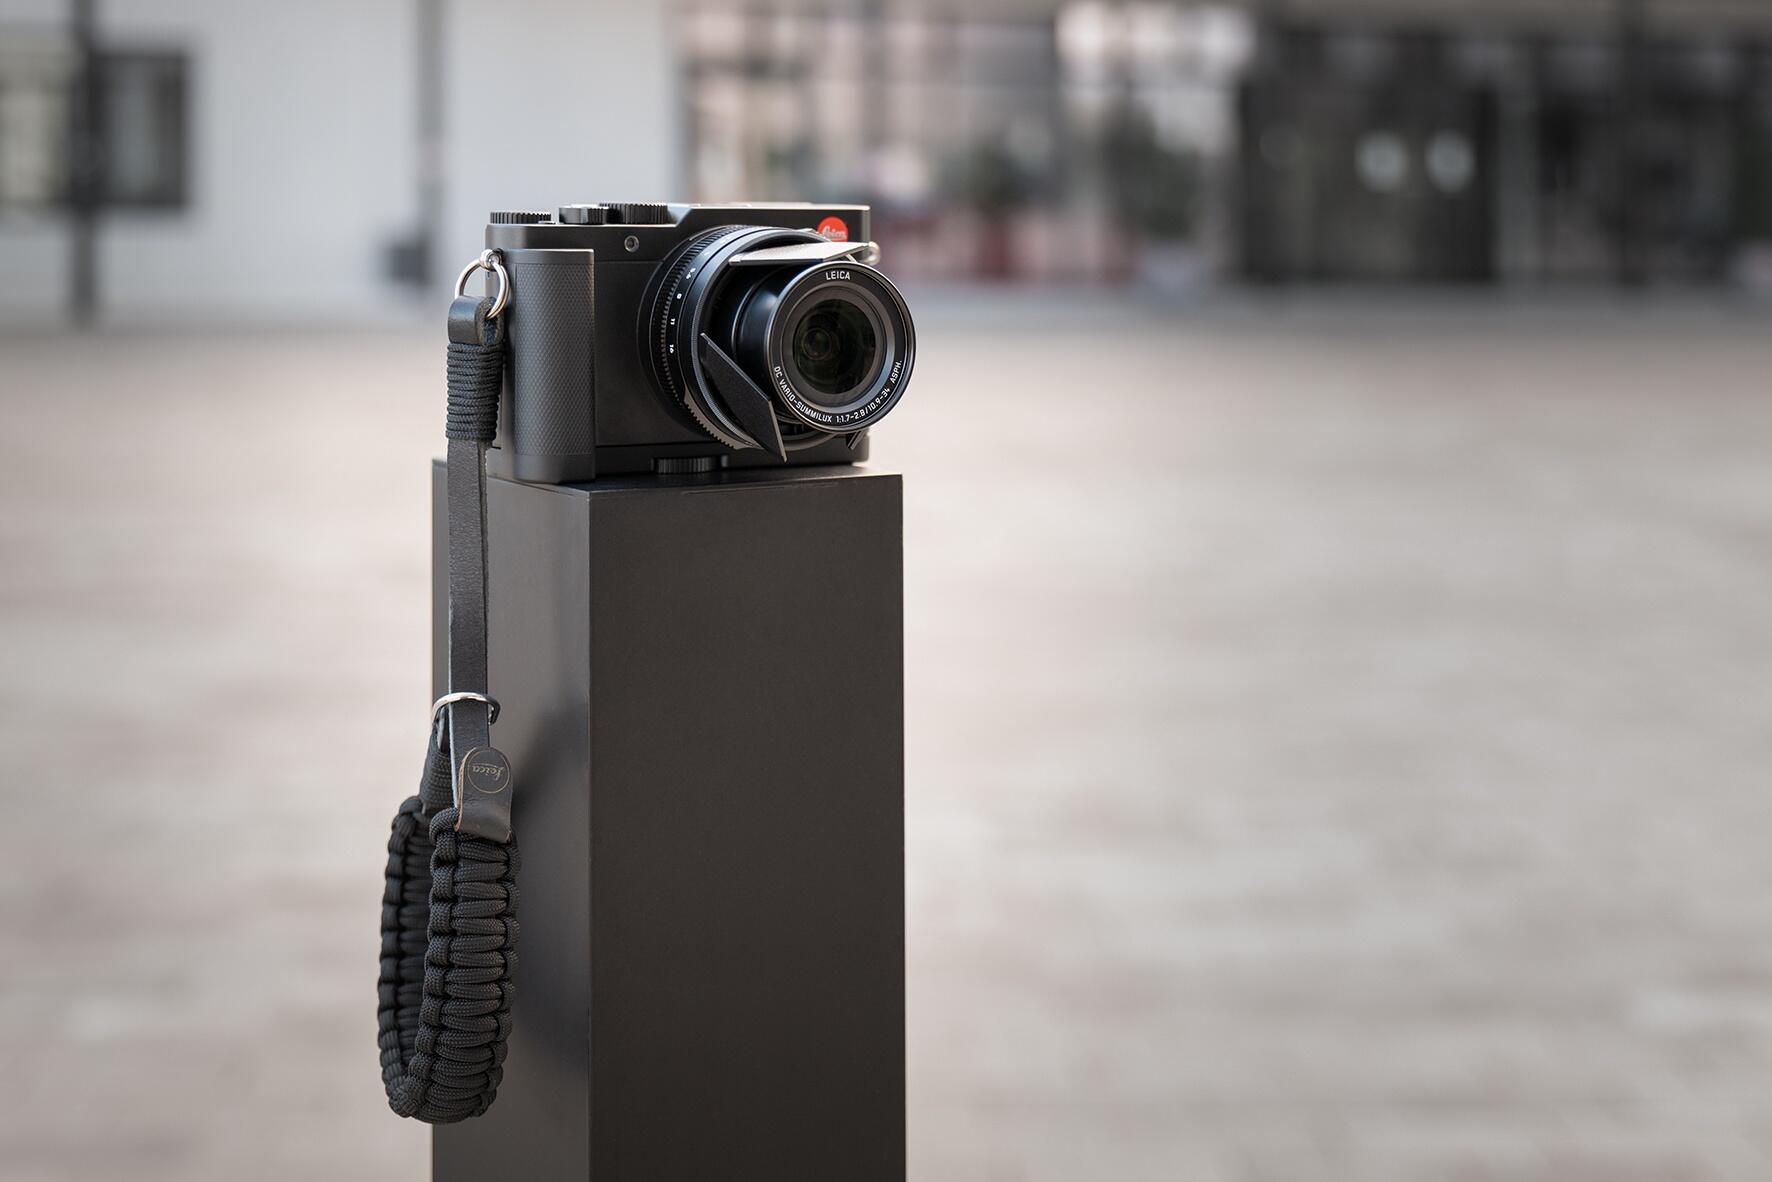 Leica ra mắt gói D-Lux 7 ‘Street Kit’ mới dành cho nhiếp ảnh đường phố